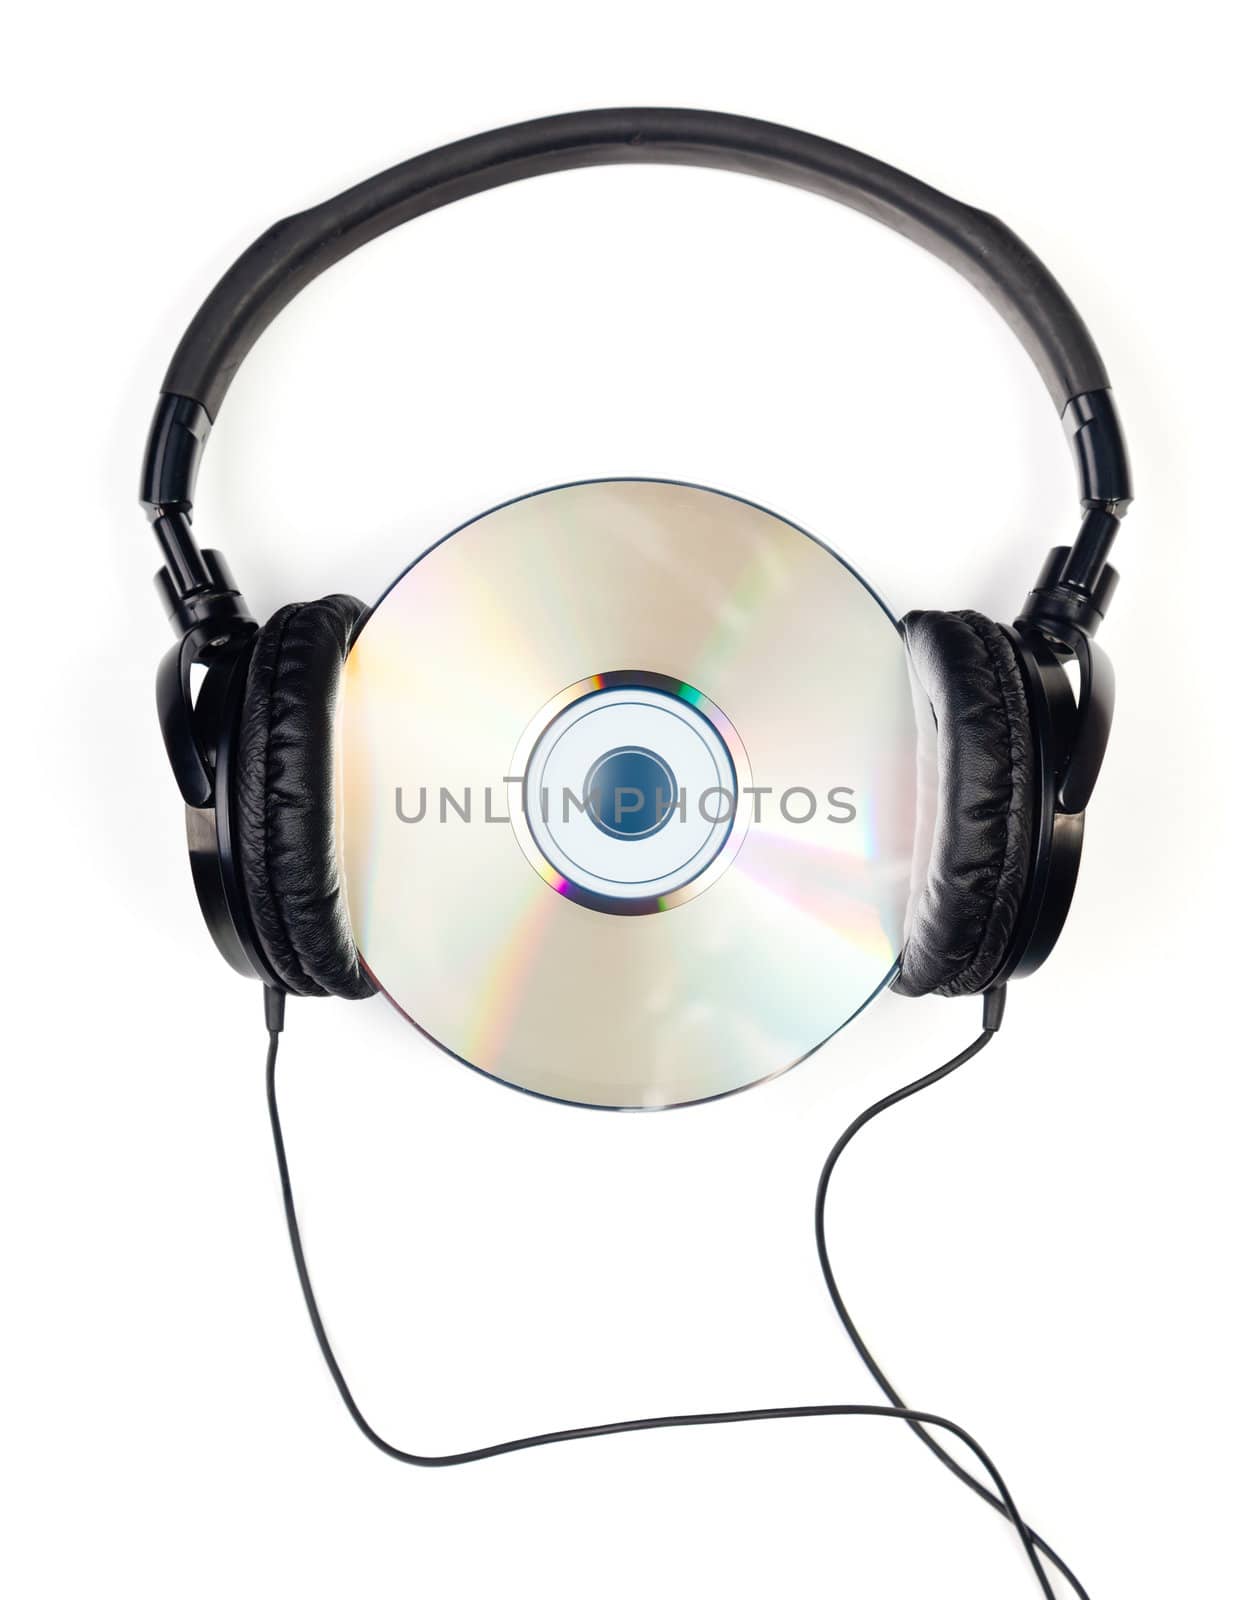 Headphones on CD by naumoid